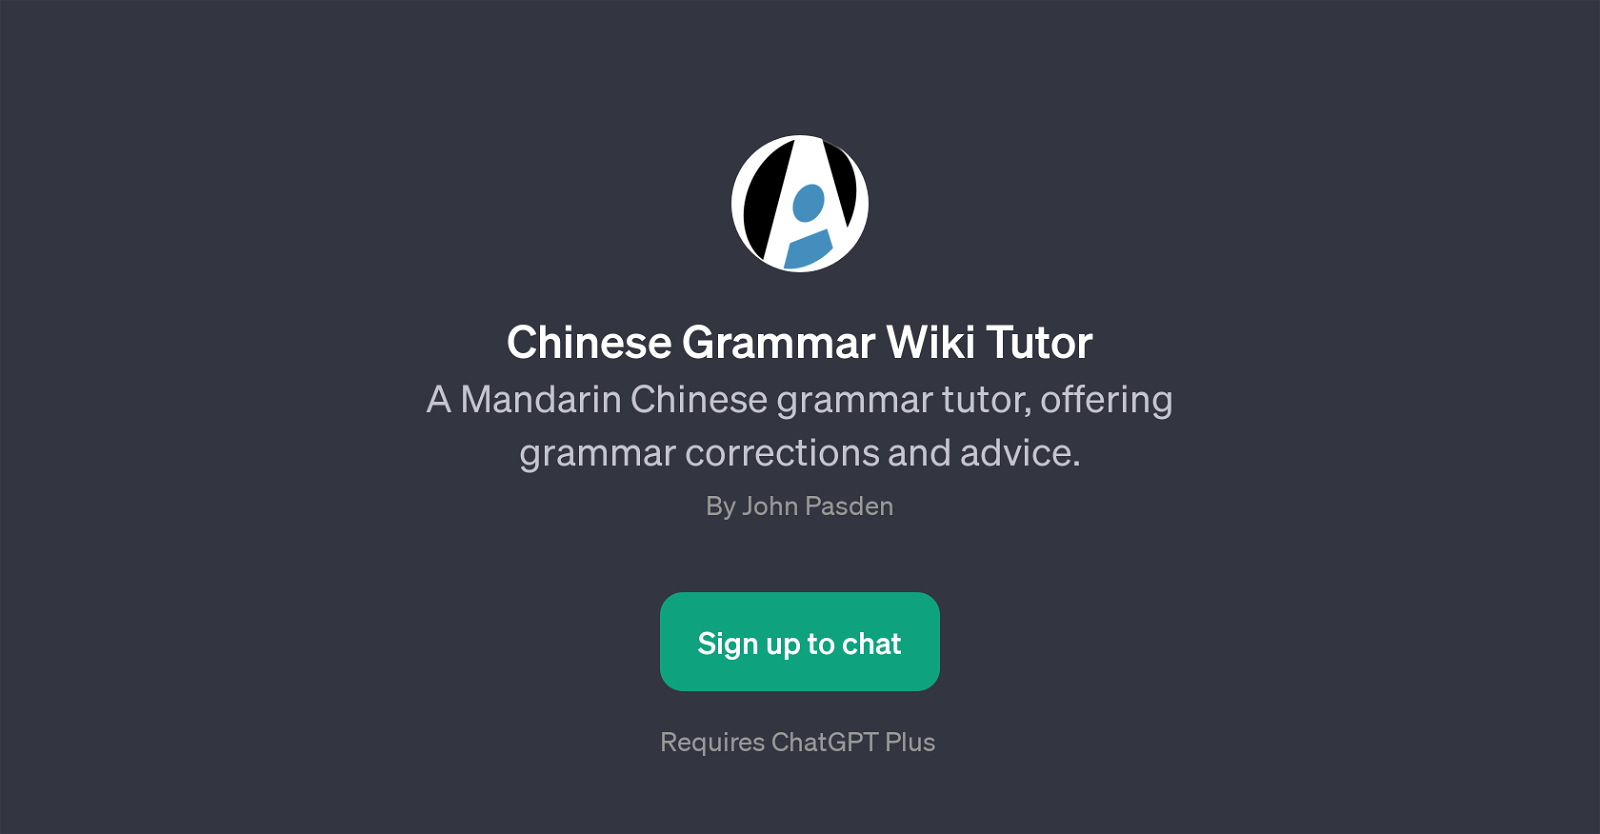 Chinese Grammar Wiki Tutor website